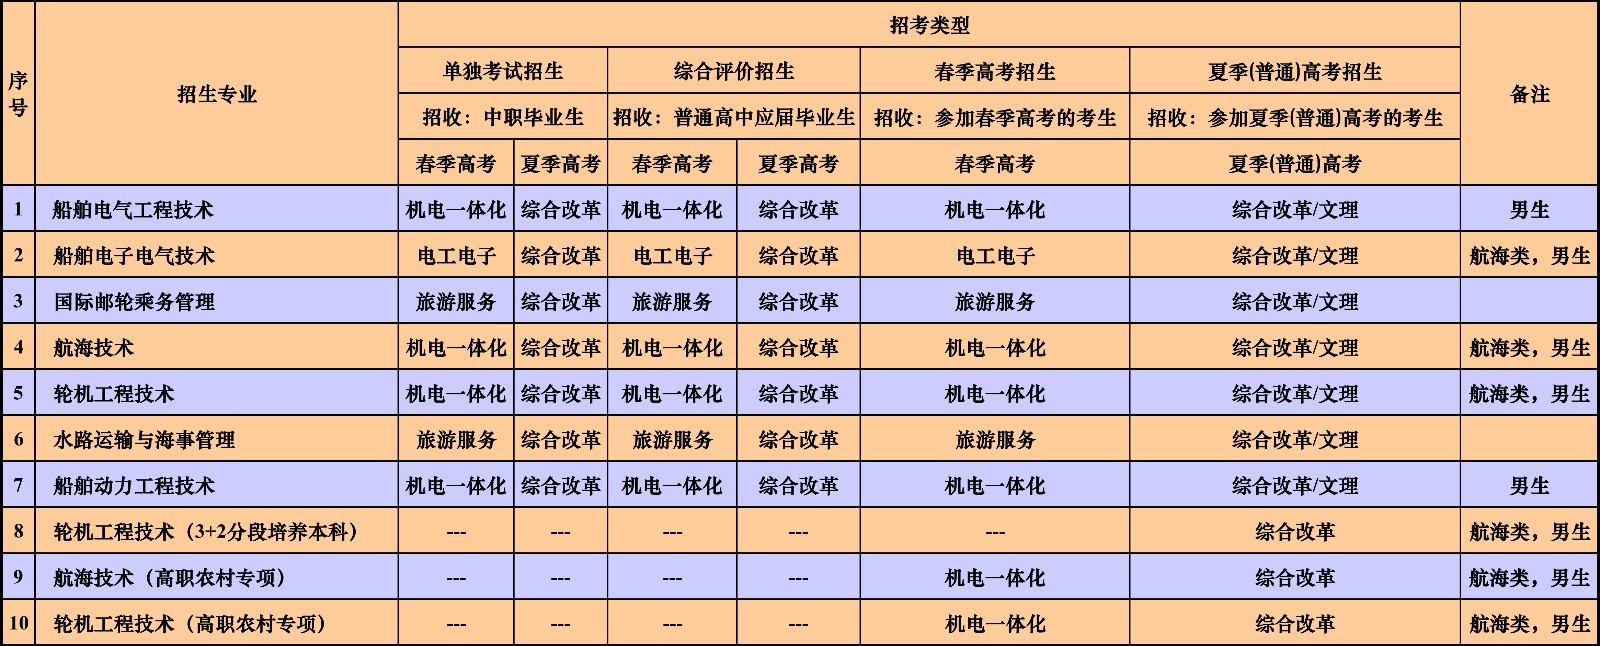 青岛港湾职业技术学院2020年招生专业及类型一览表-海事学院.jpg